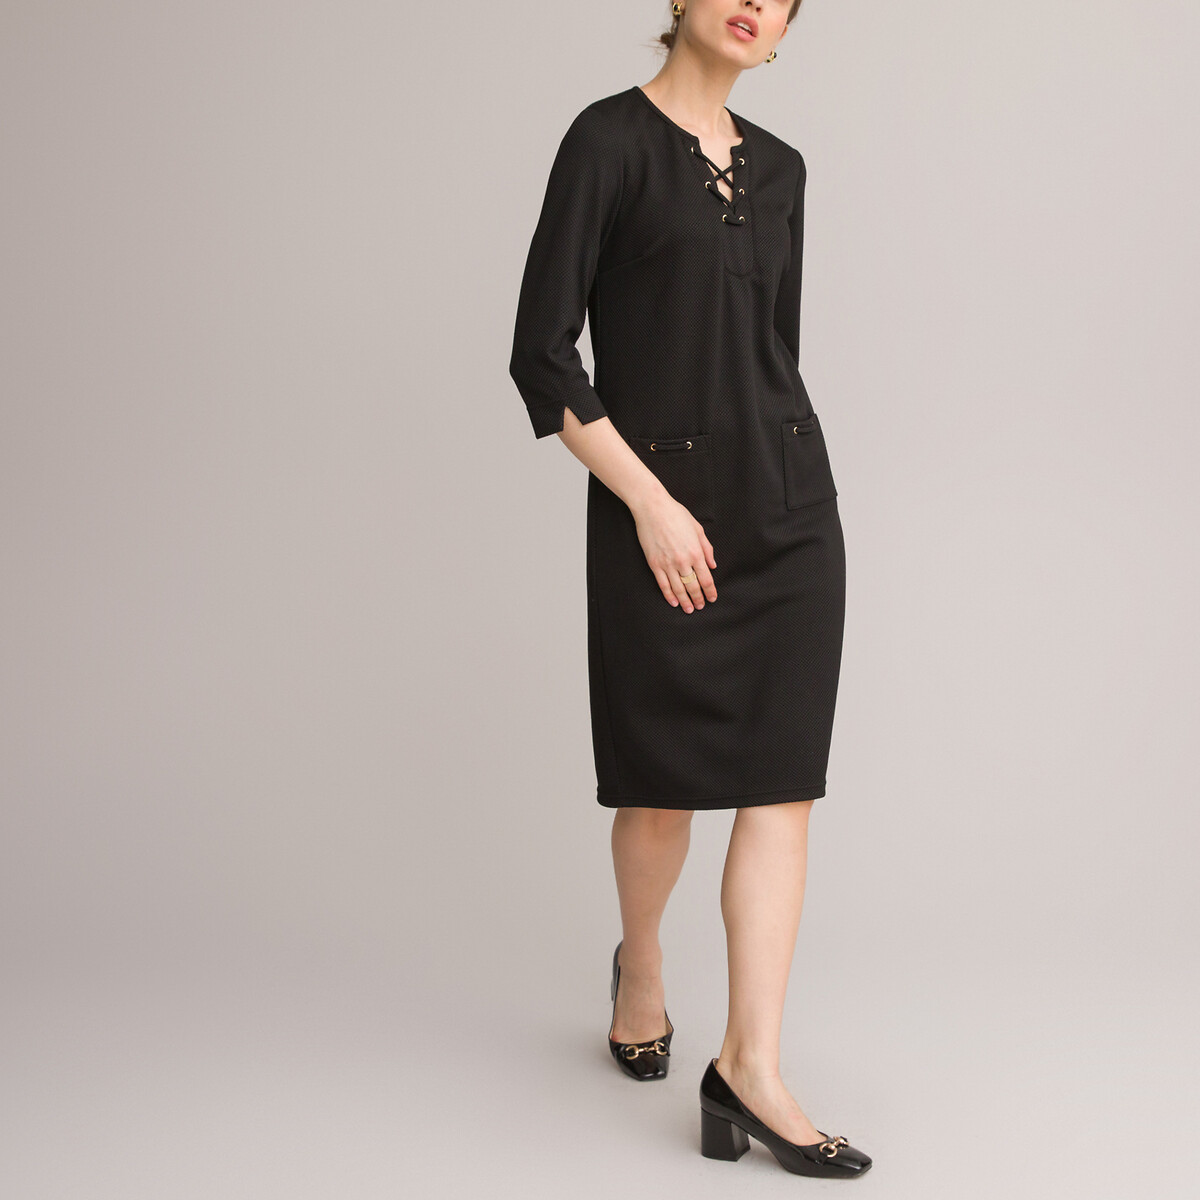 Платье ANNE WEYBURN Платье Прямое средней длины рукава 34 46 черный, размер 46 - фото 2